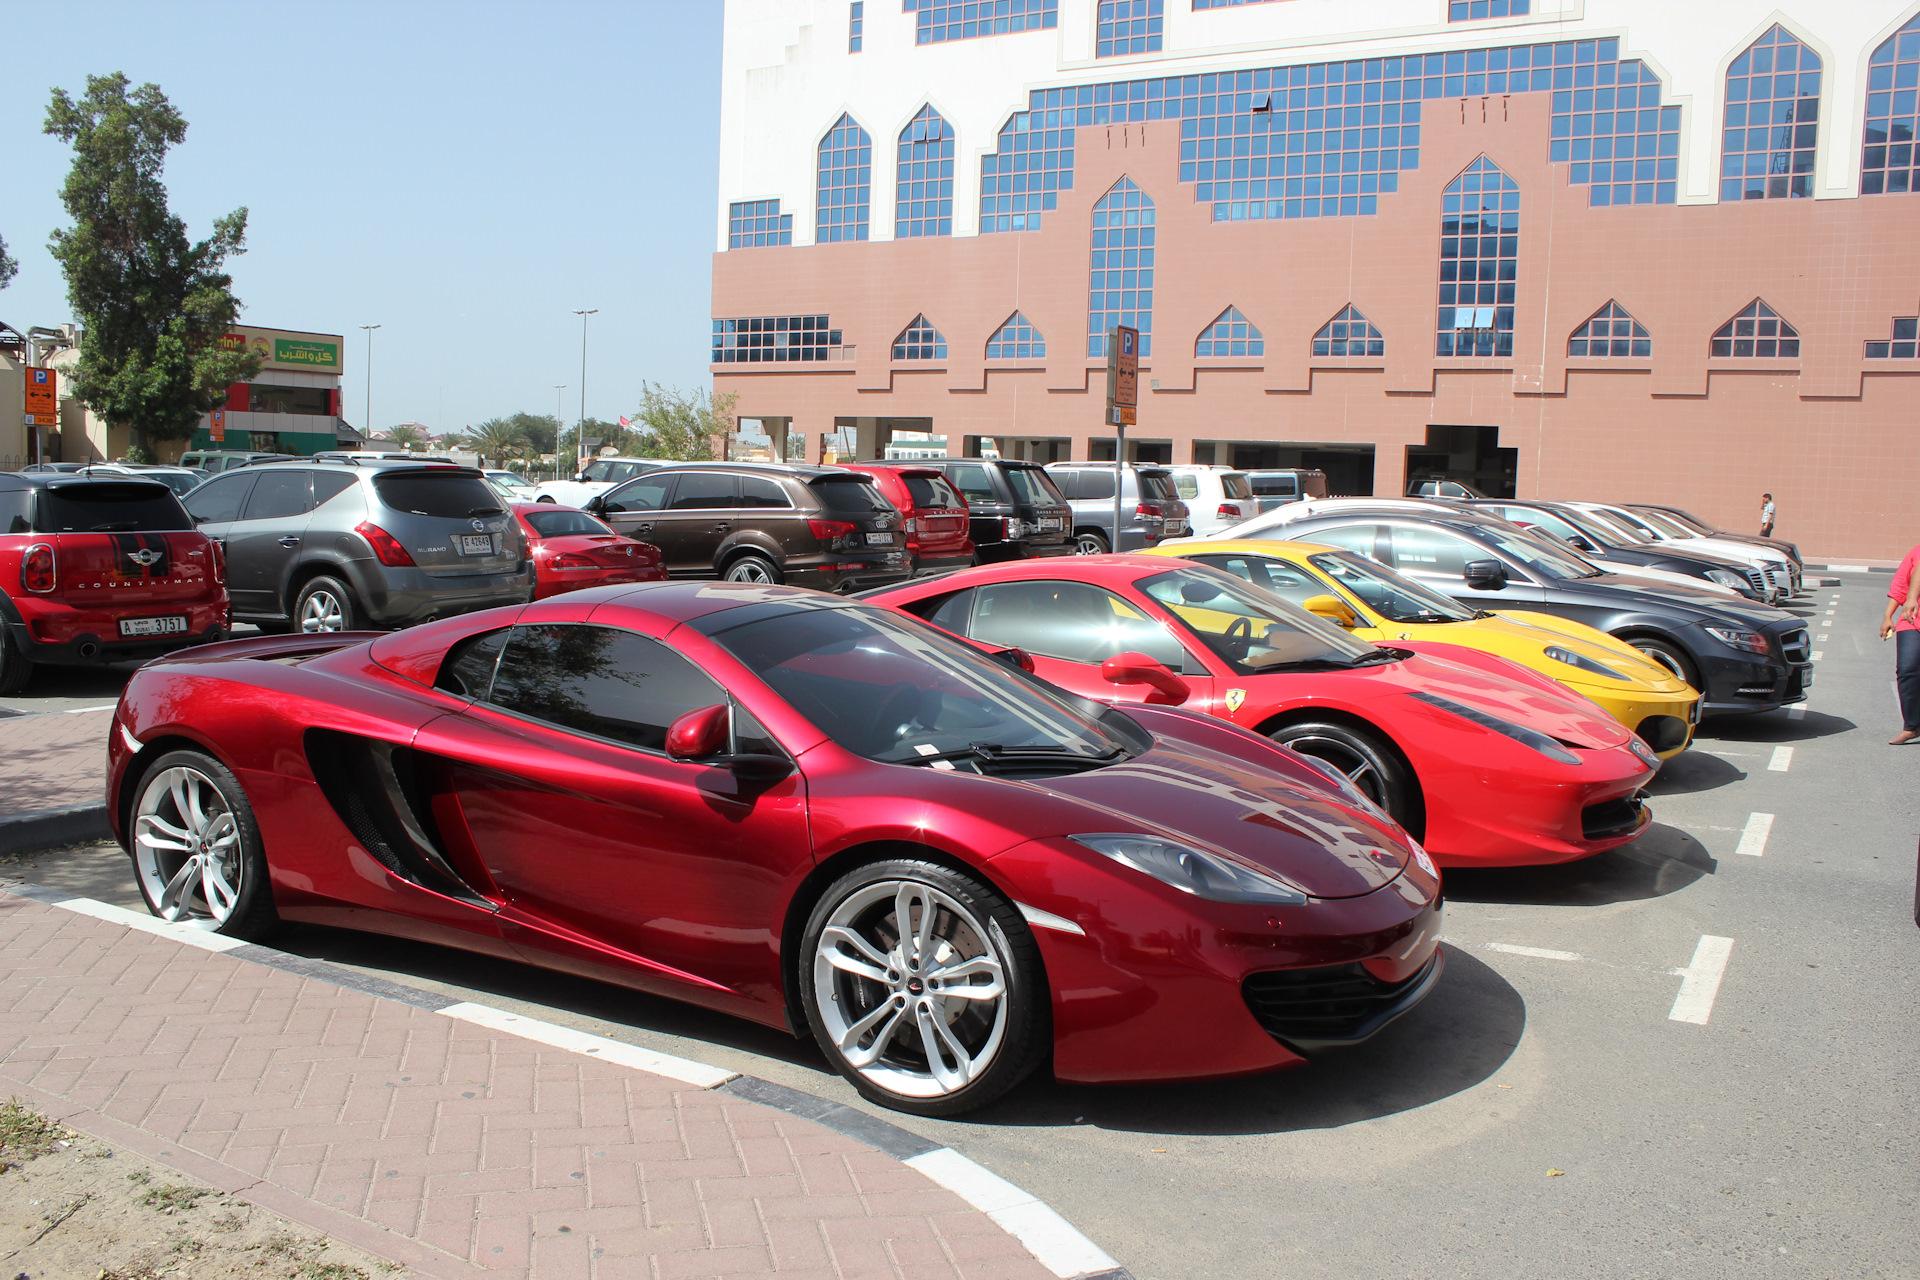 Фото авто в Дубае